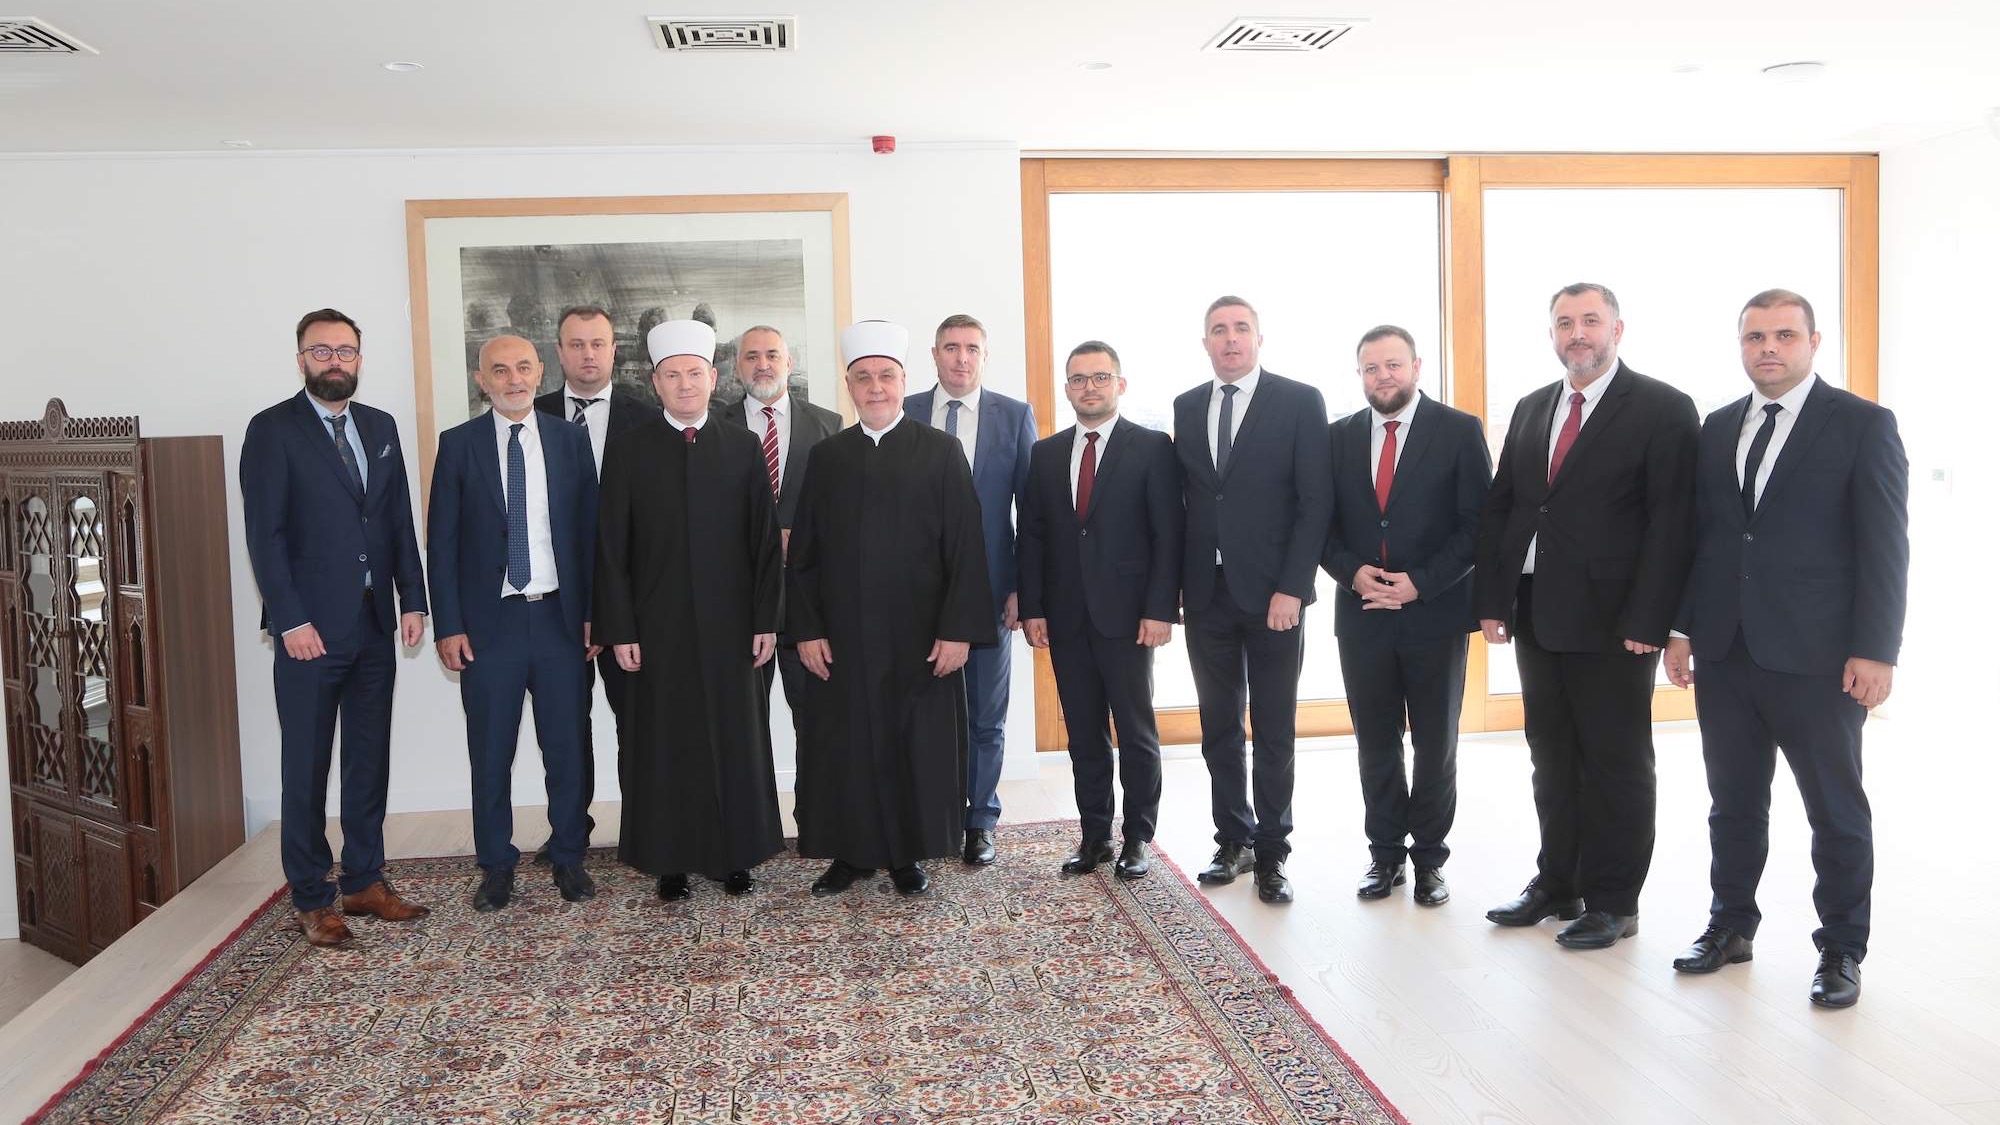 Reisul-ulemu posjetila delegacija Mešihata Islamske zajednice u Sloveniji